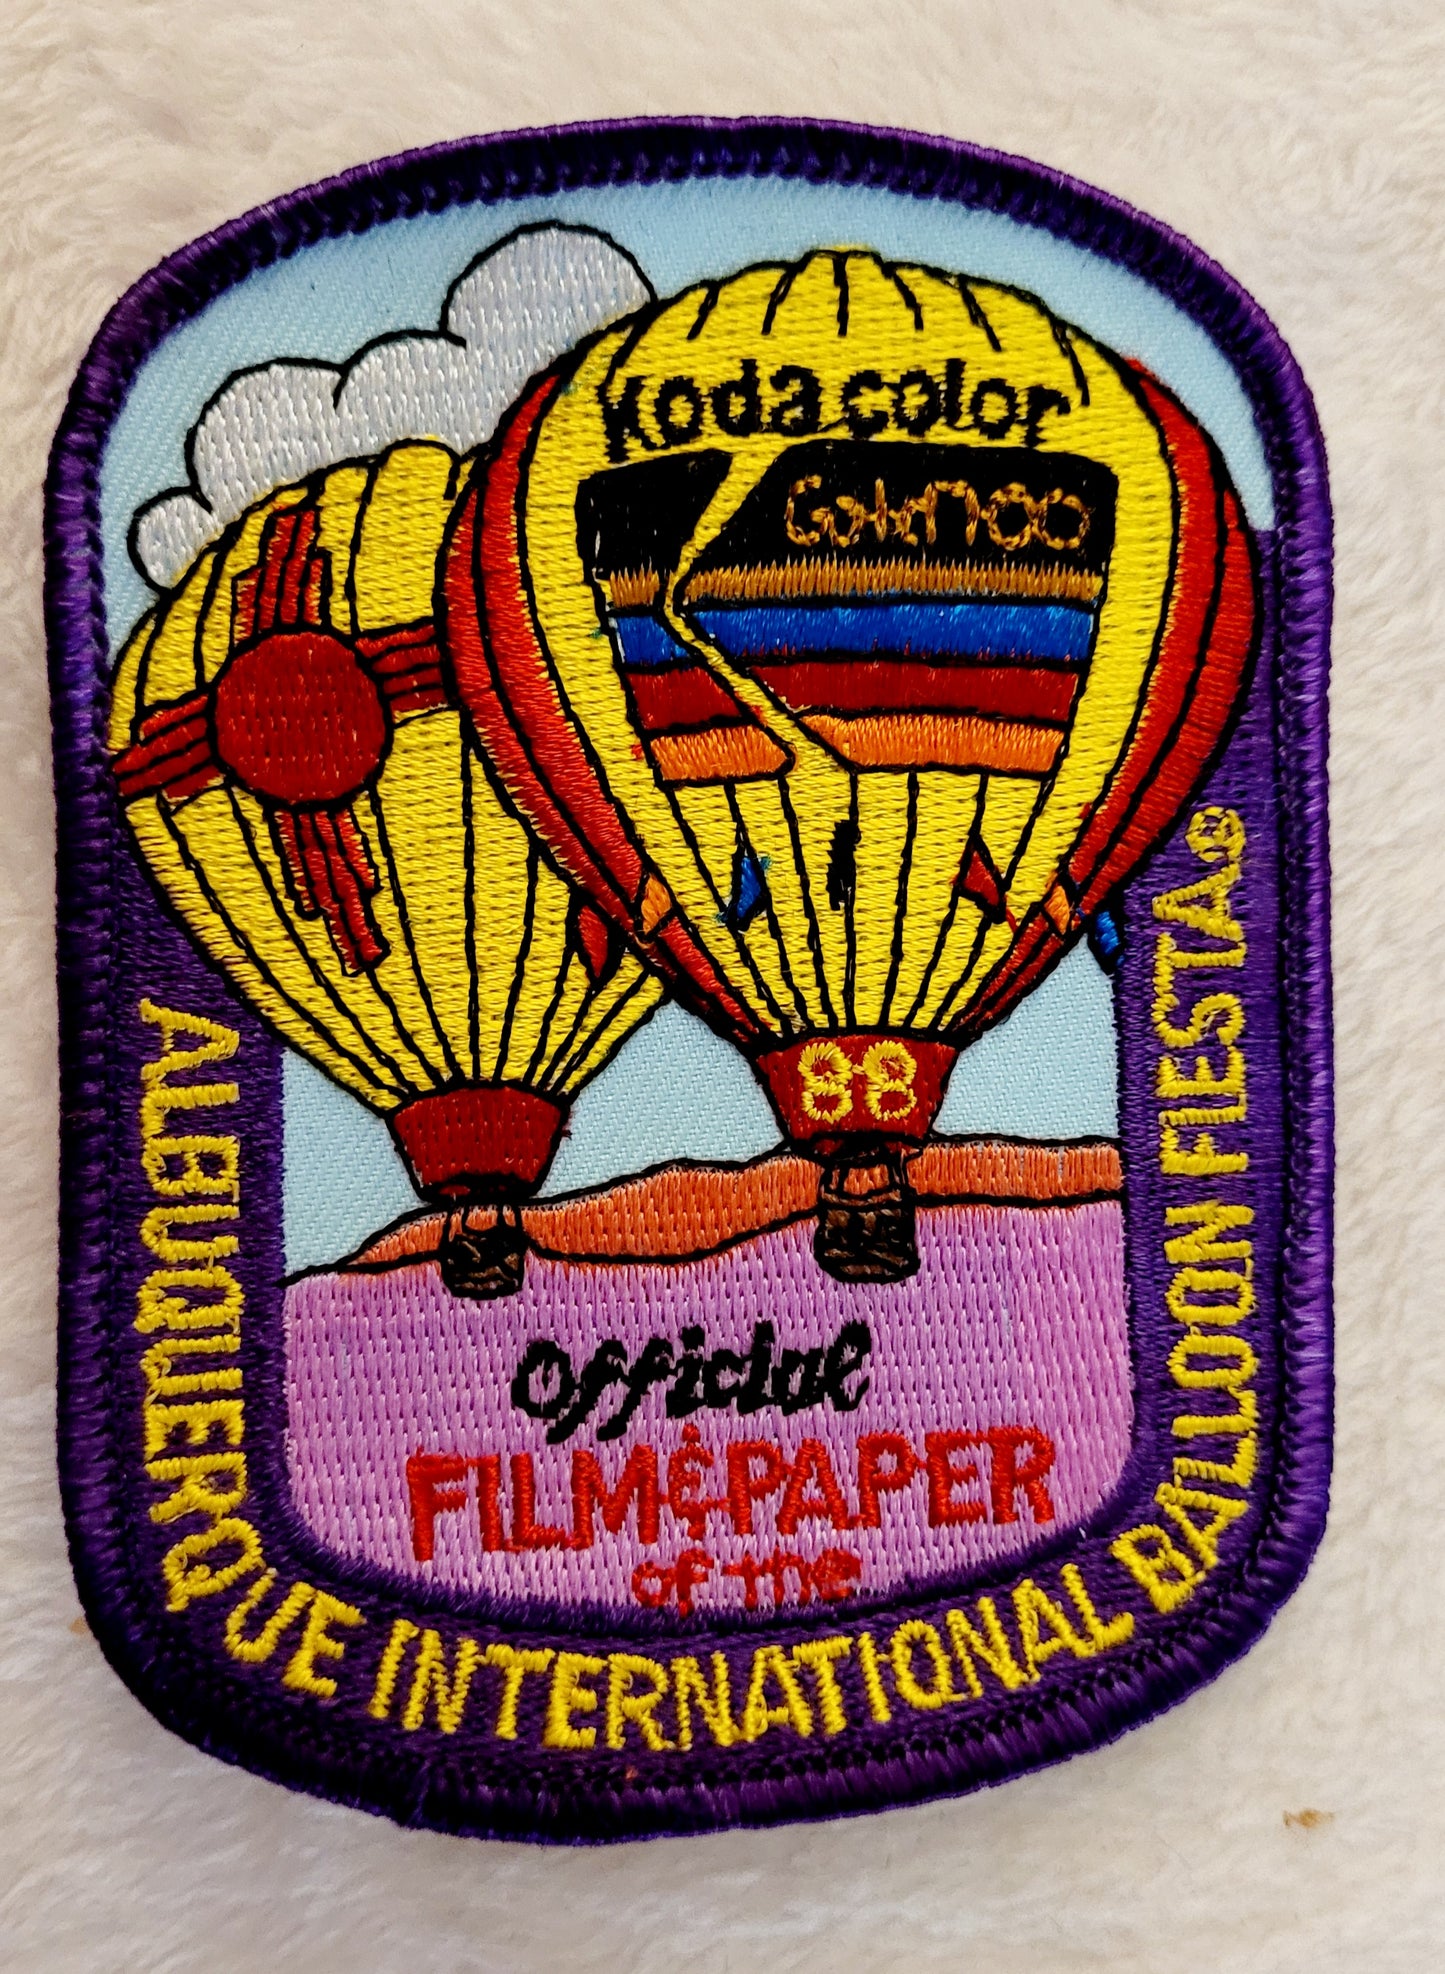 17th Annual ABQ Balloon Fiesta 1988 *ABQ Int'l Hot Air Balloon Fiesta Patch